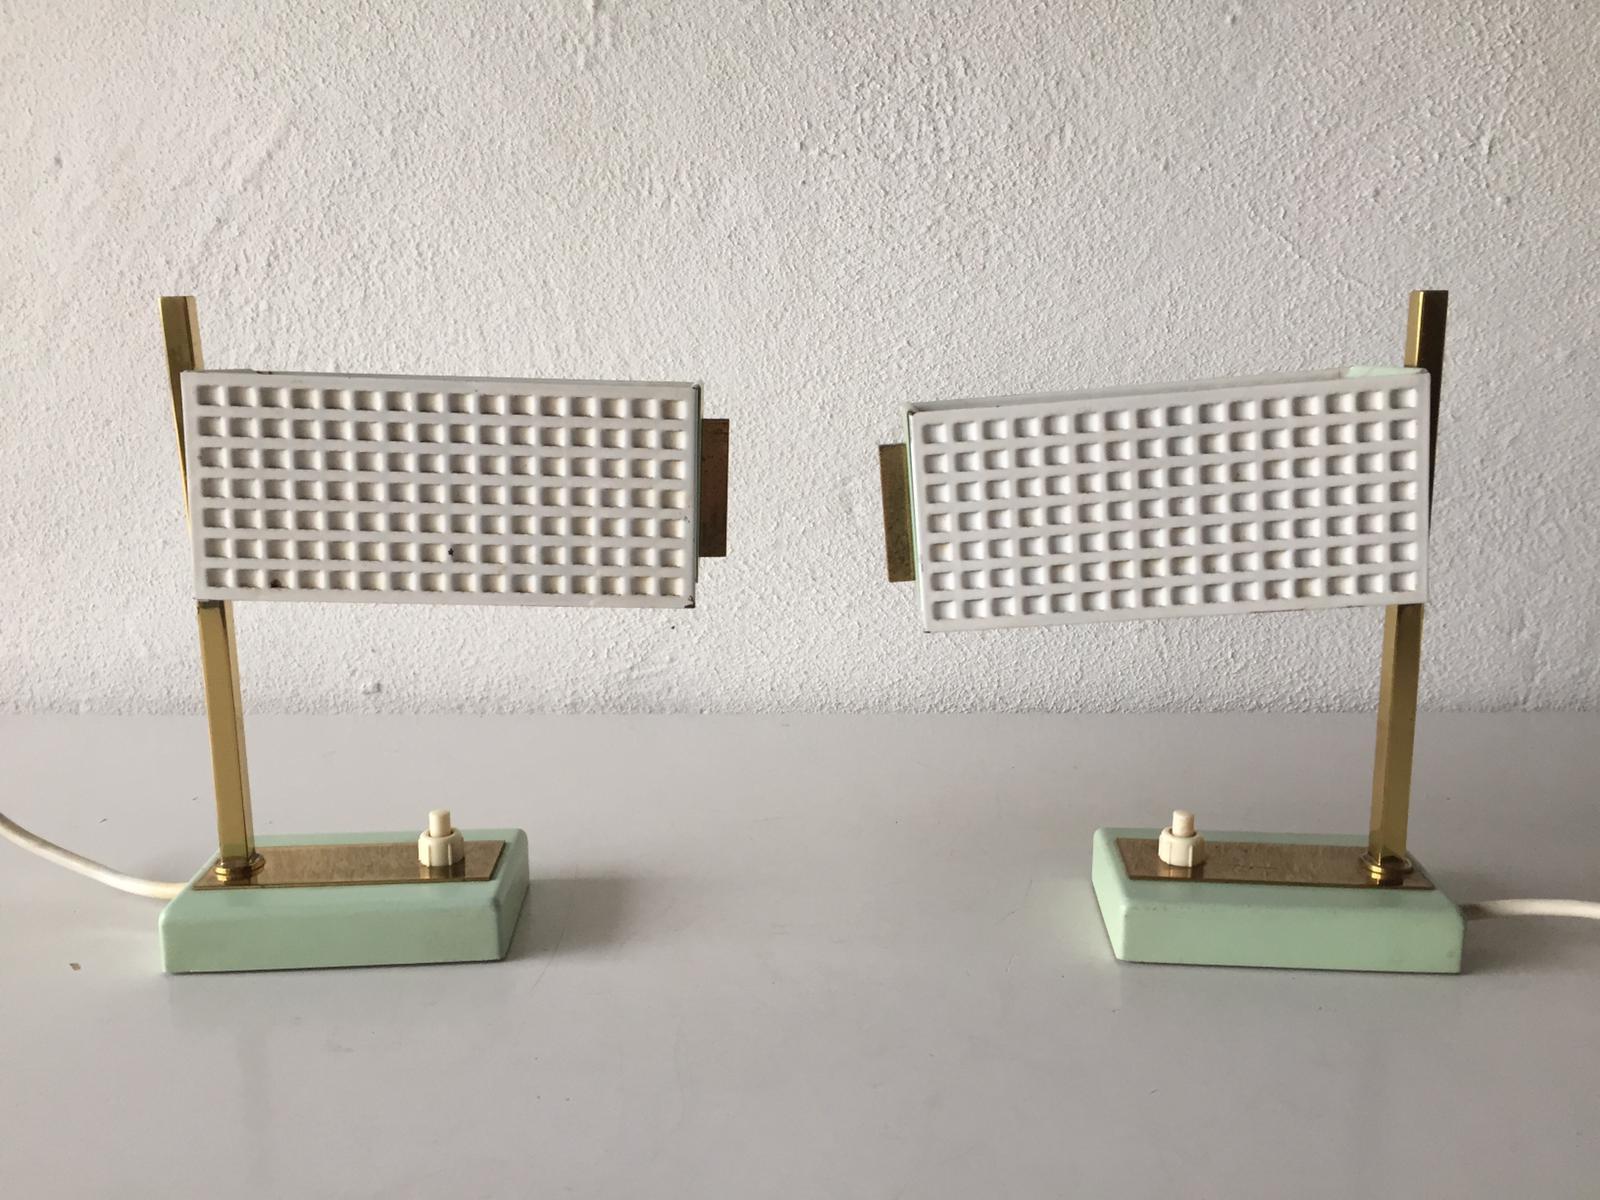 Paire de lampes de table en métal vert et blanc style Mathieu Matégot, années 1950

Un design minimal et de très haute qualité
Entièrement fonctionnel.

Ces lampes sont fabriquées en métal perforé et en laiton.

Câble et fiche d'origine. Ces lampes